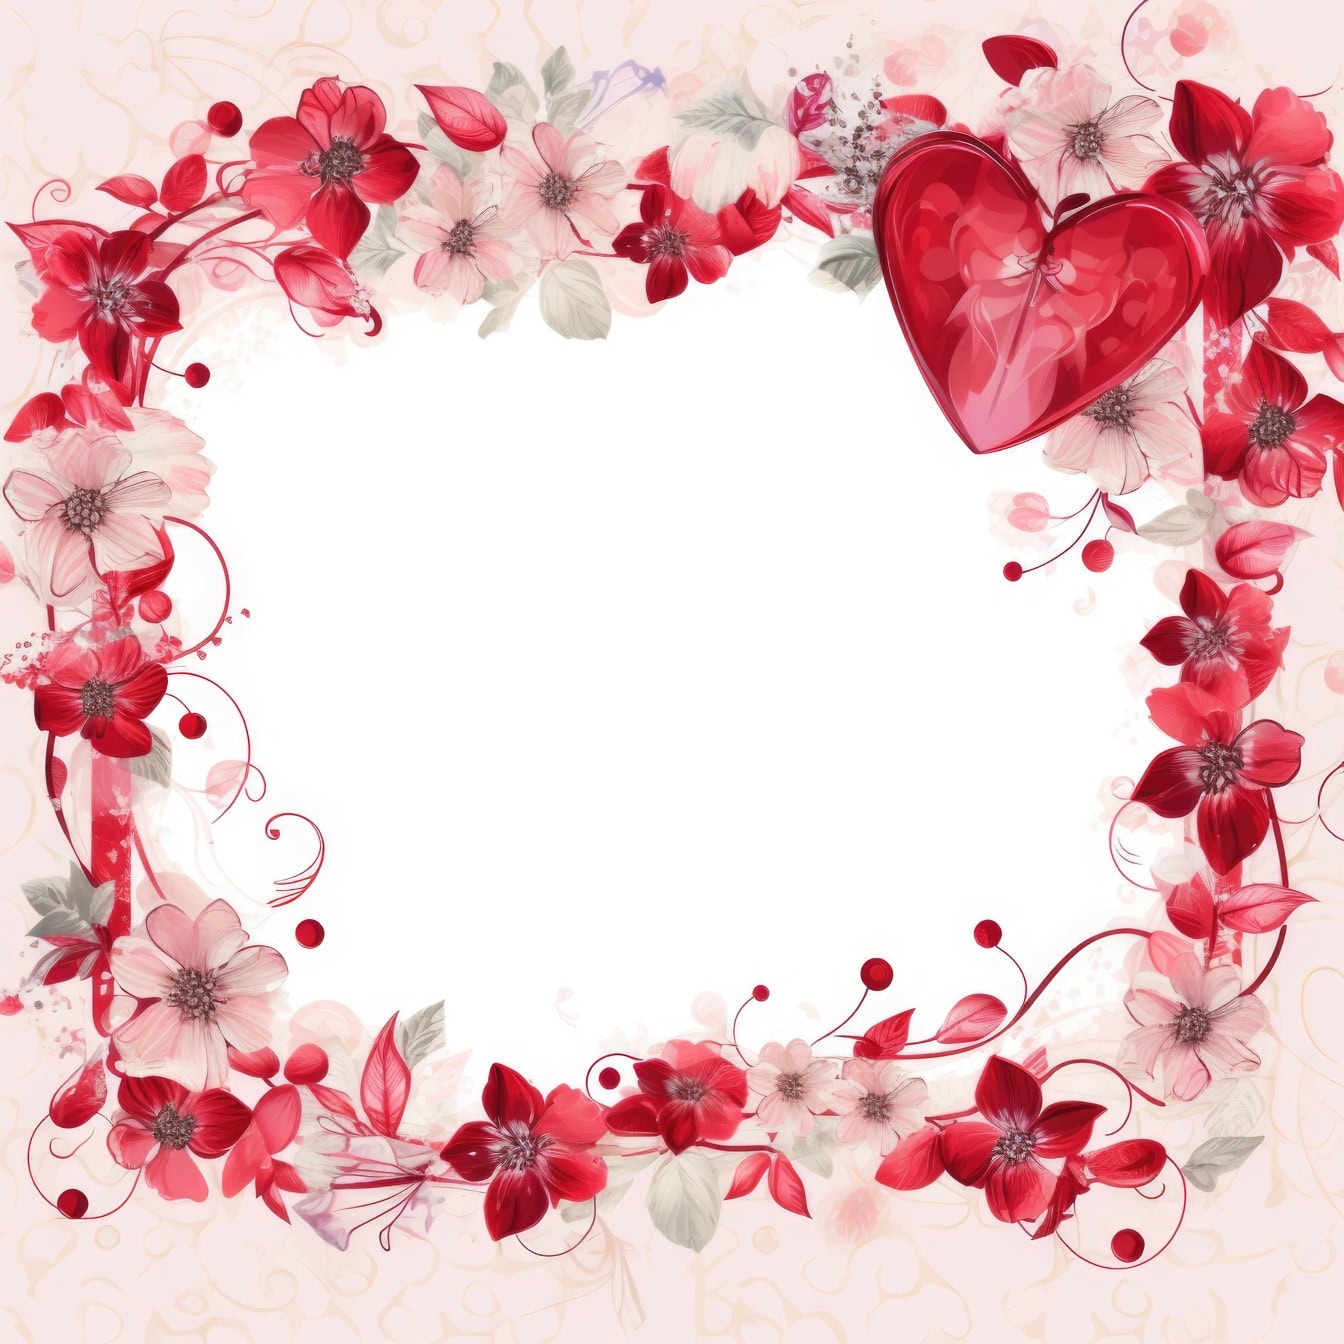 Modello di biglietto d’invito floreale romantico per San Valentino con cornice di fiori e un cuore rosso scuro